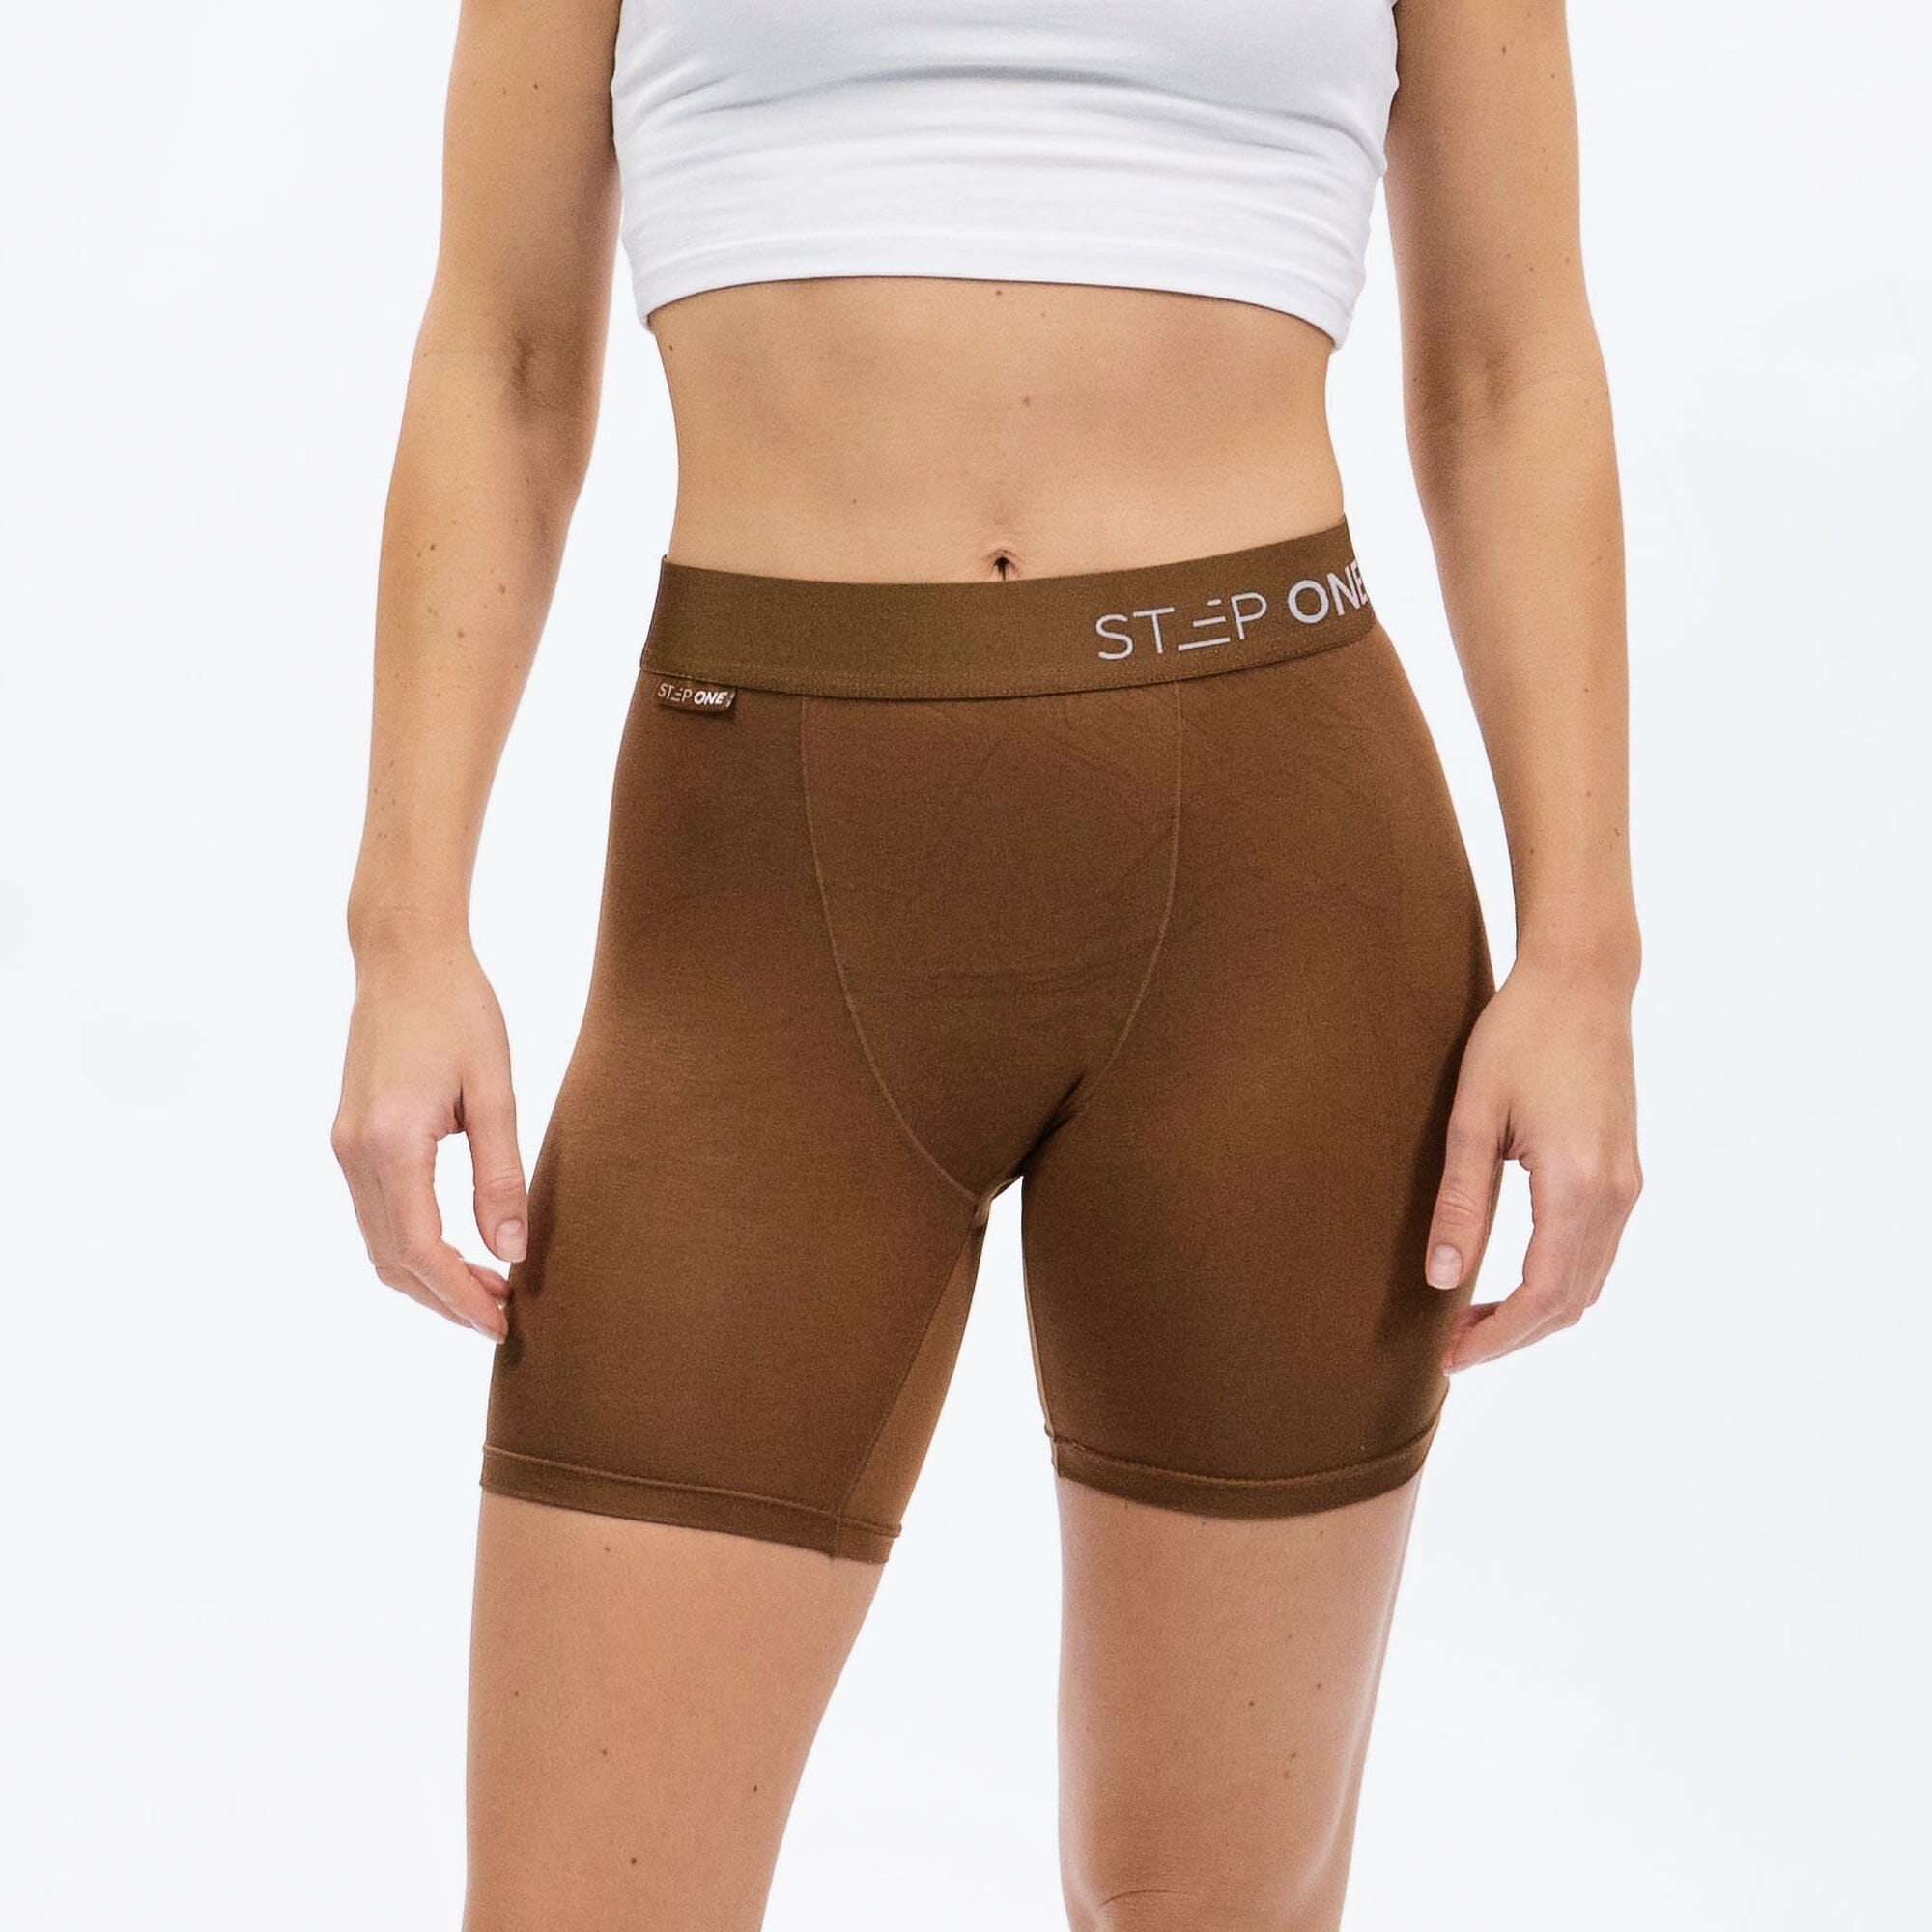 Women's Body Shorts - Mahogany product